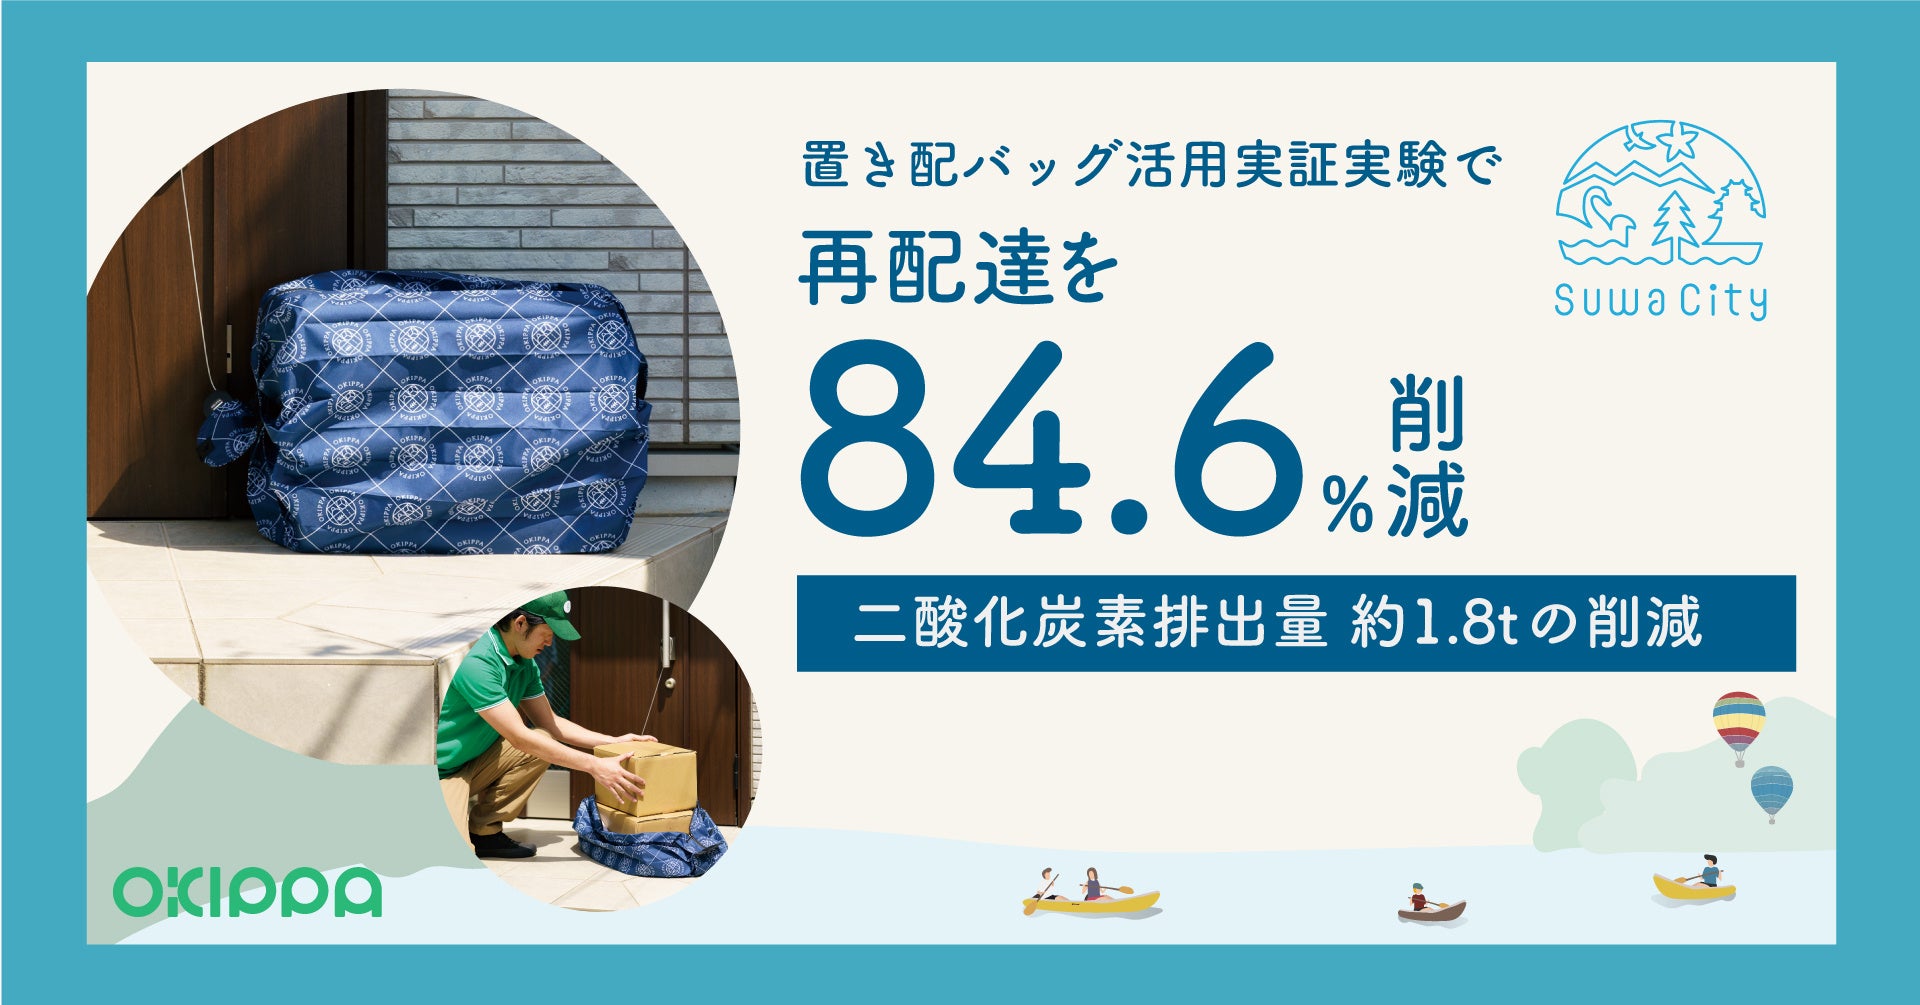 OKIPPA、諏訪市置き配バッグ活用実証実験で再配達を84.6%削減、脱炭素社会実現への住民意識醸成へのサブ画像1